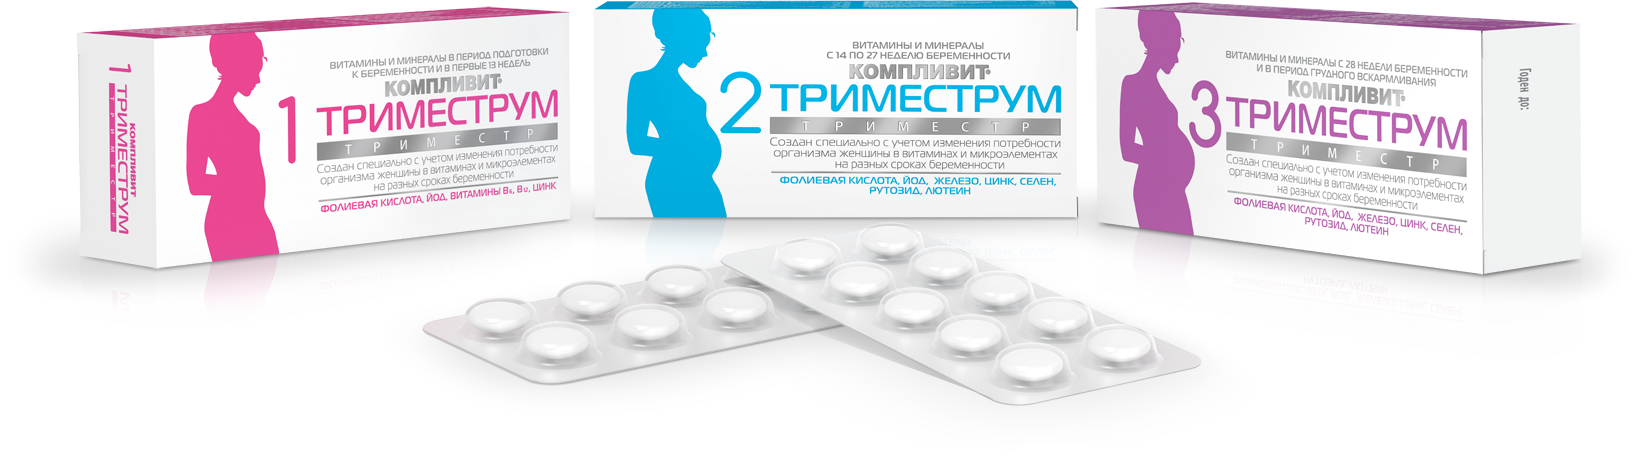 Принимать витамины во время беременности. Компливит витамины для беременных 1 триместр. Компливит Триместрум 1 состав. Триместрум витамины для беременных. Таблетки для беременных 1 триместр витамины.